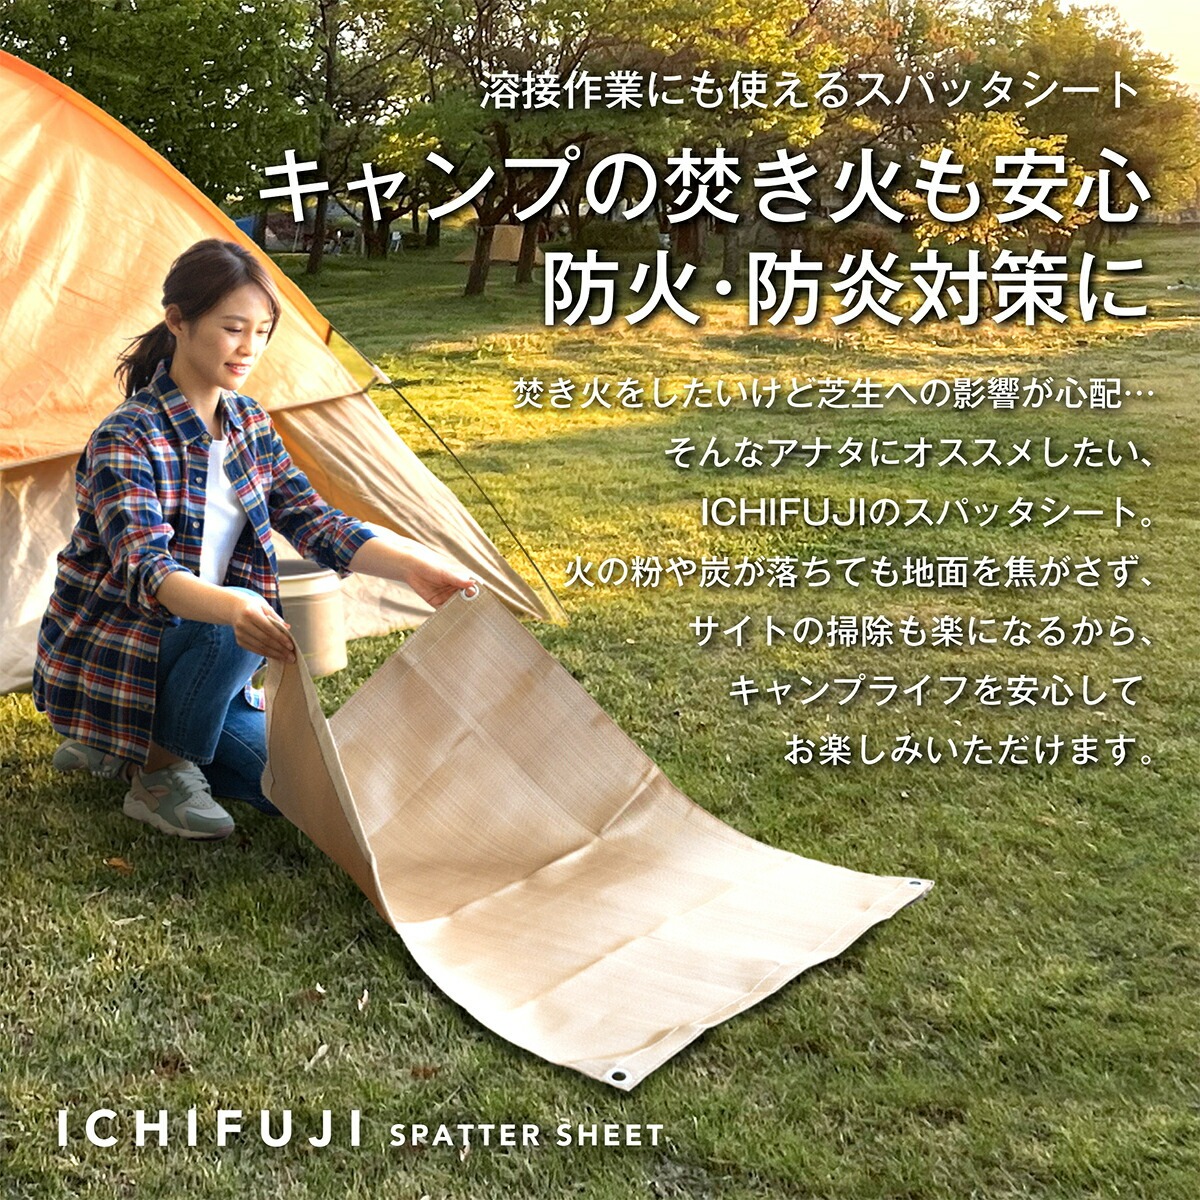 ICHIFUJI (ハトメ無し, 1ｍ*1ｍ) 耐火 防炎 スパッタシート 瞬間耐火